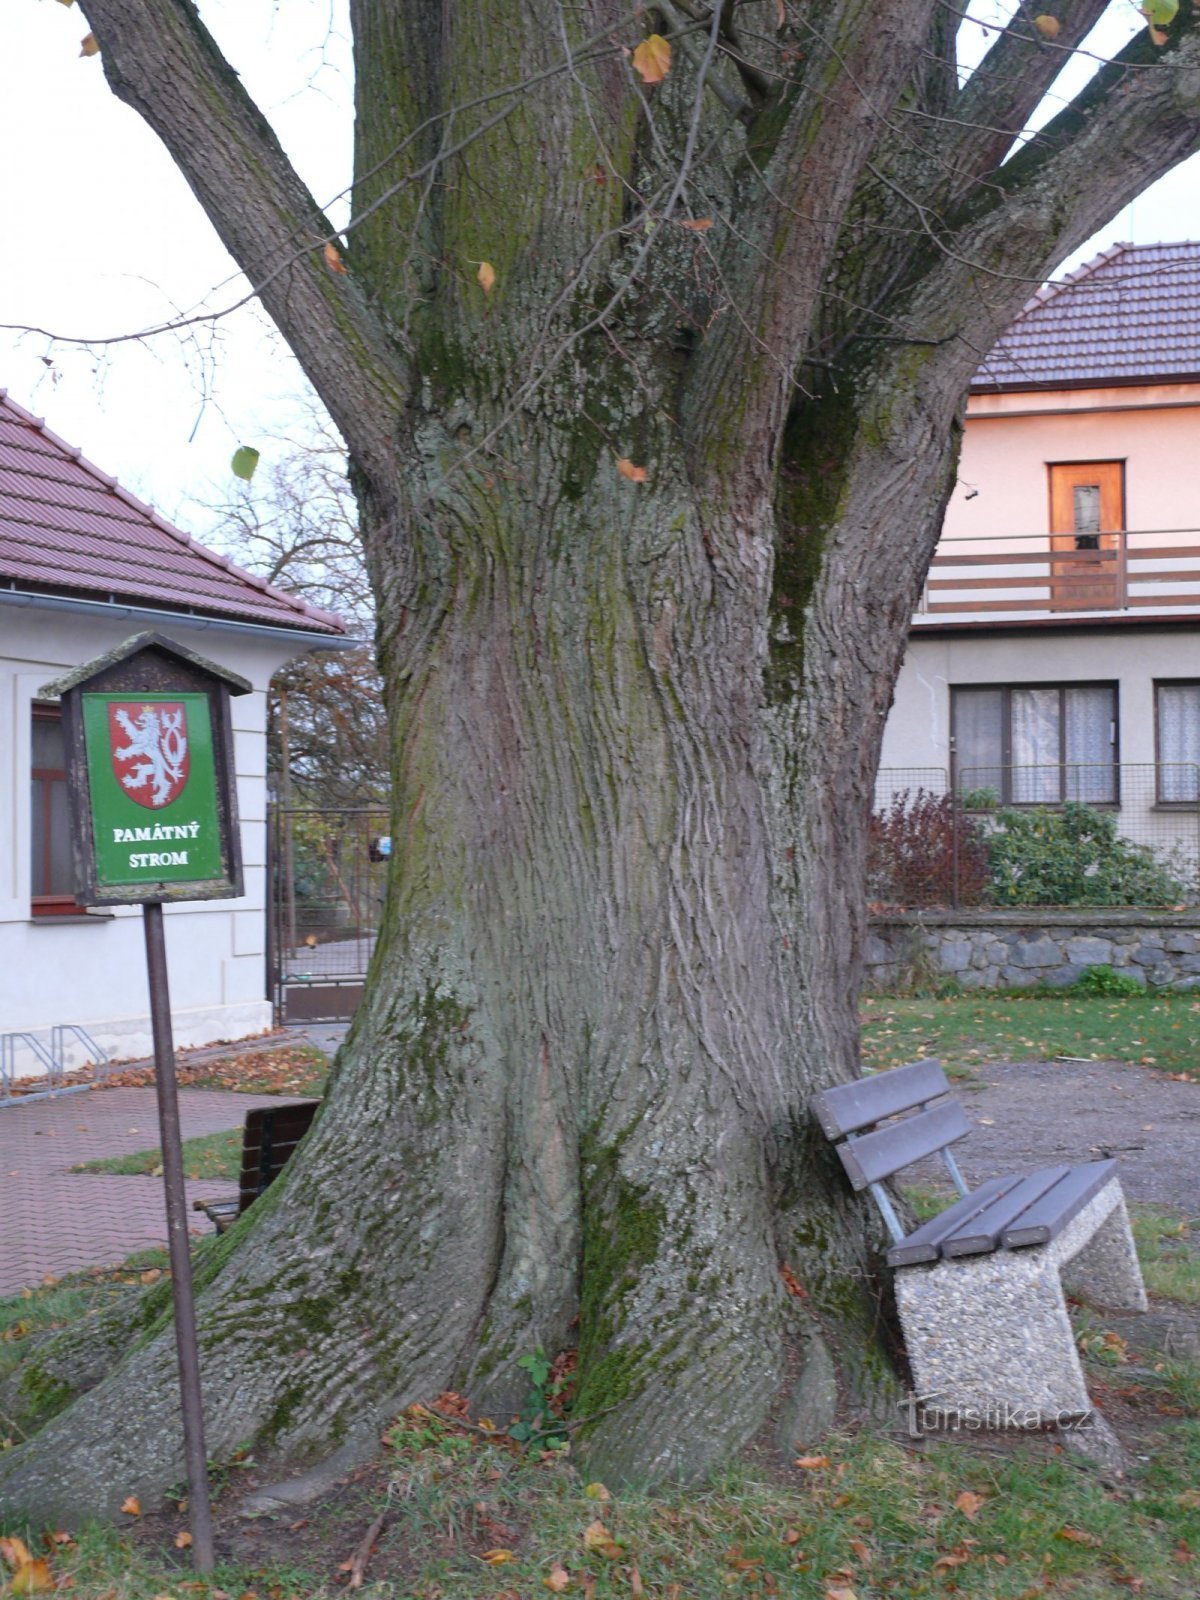 Hay bancos y letreros que marcan el árbol conmemorativo cerca del tronco.